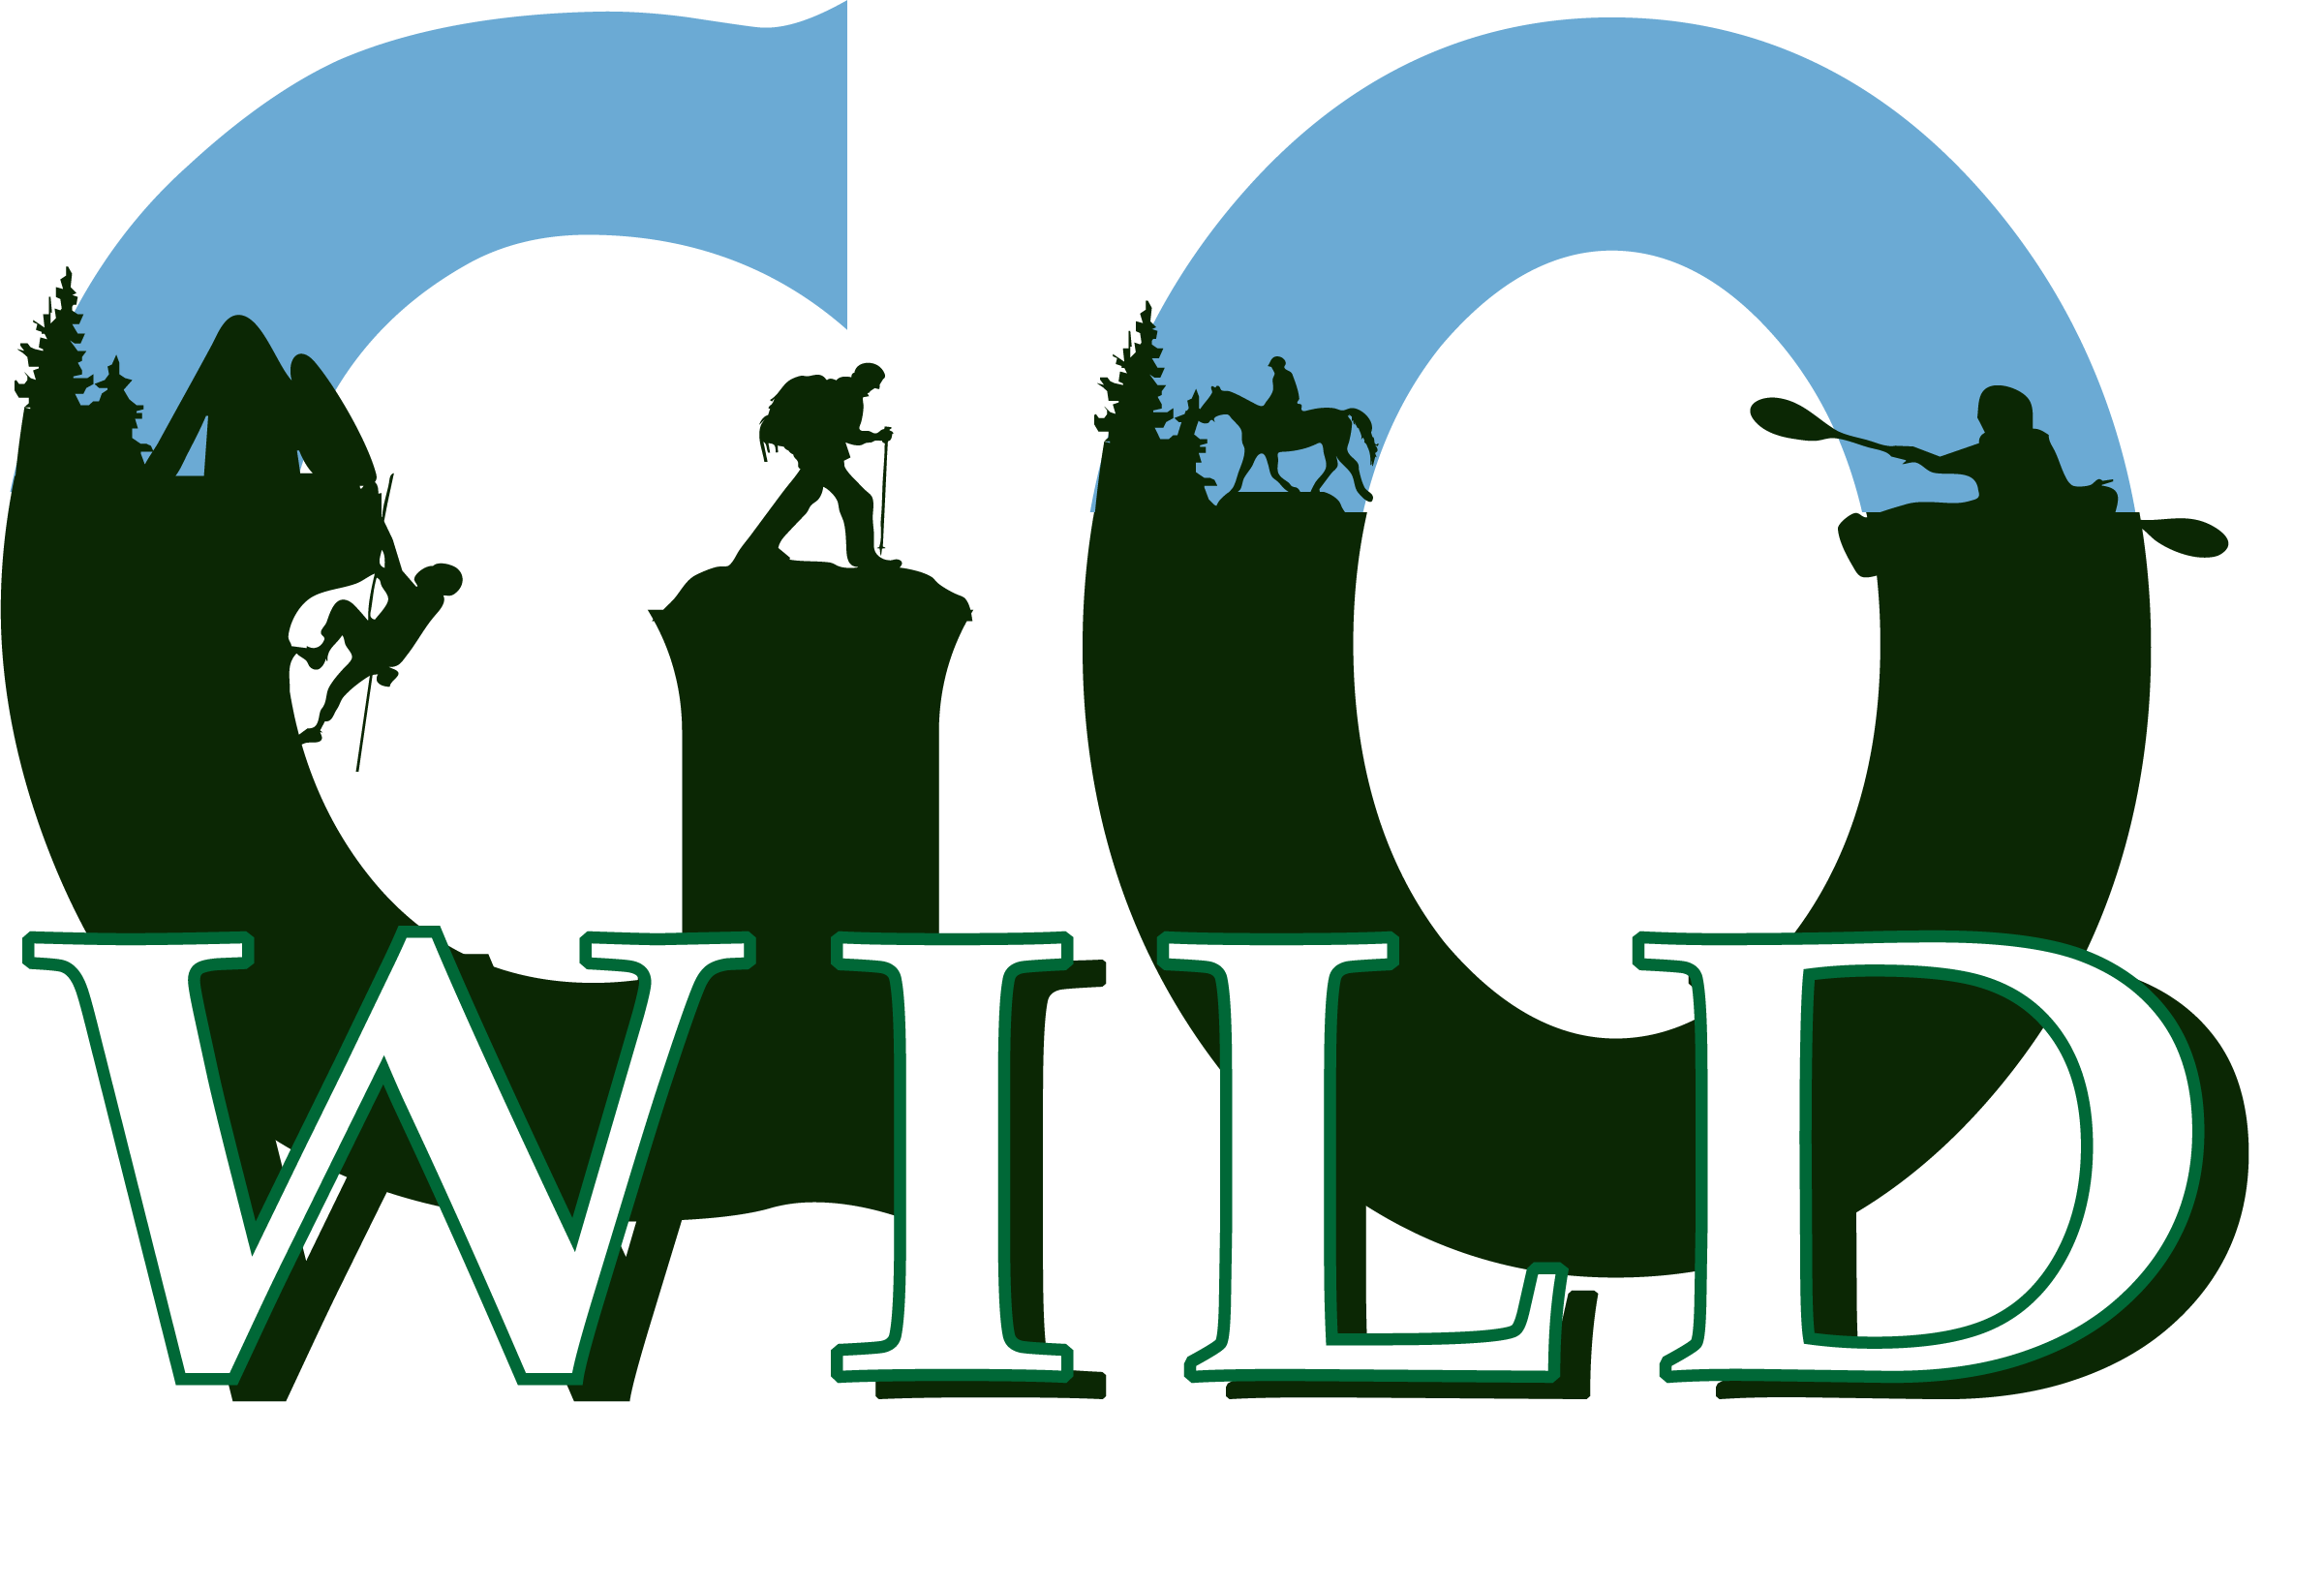 Annoncer l'ouverture d'un site internet - Go Wild